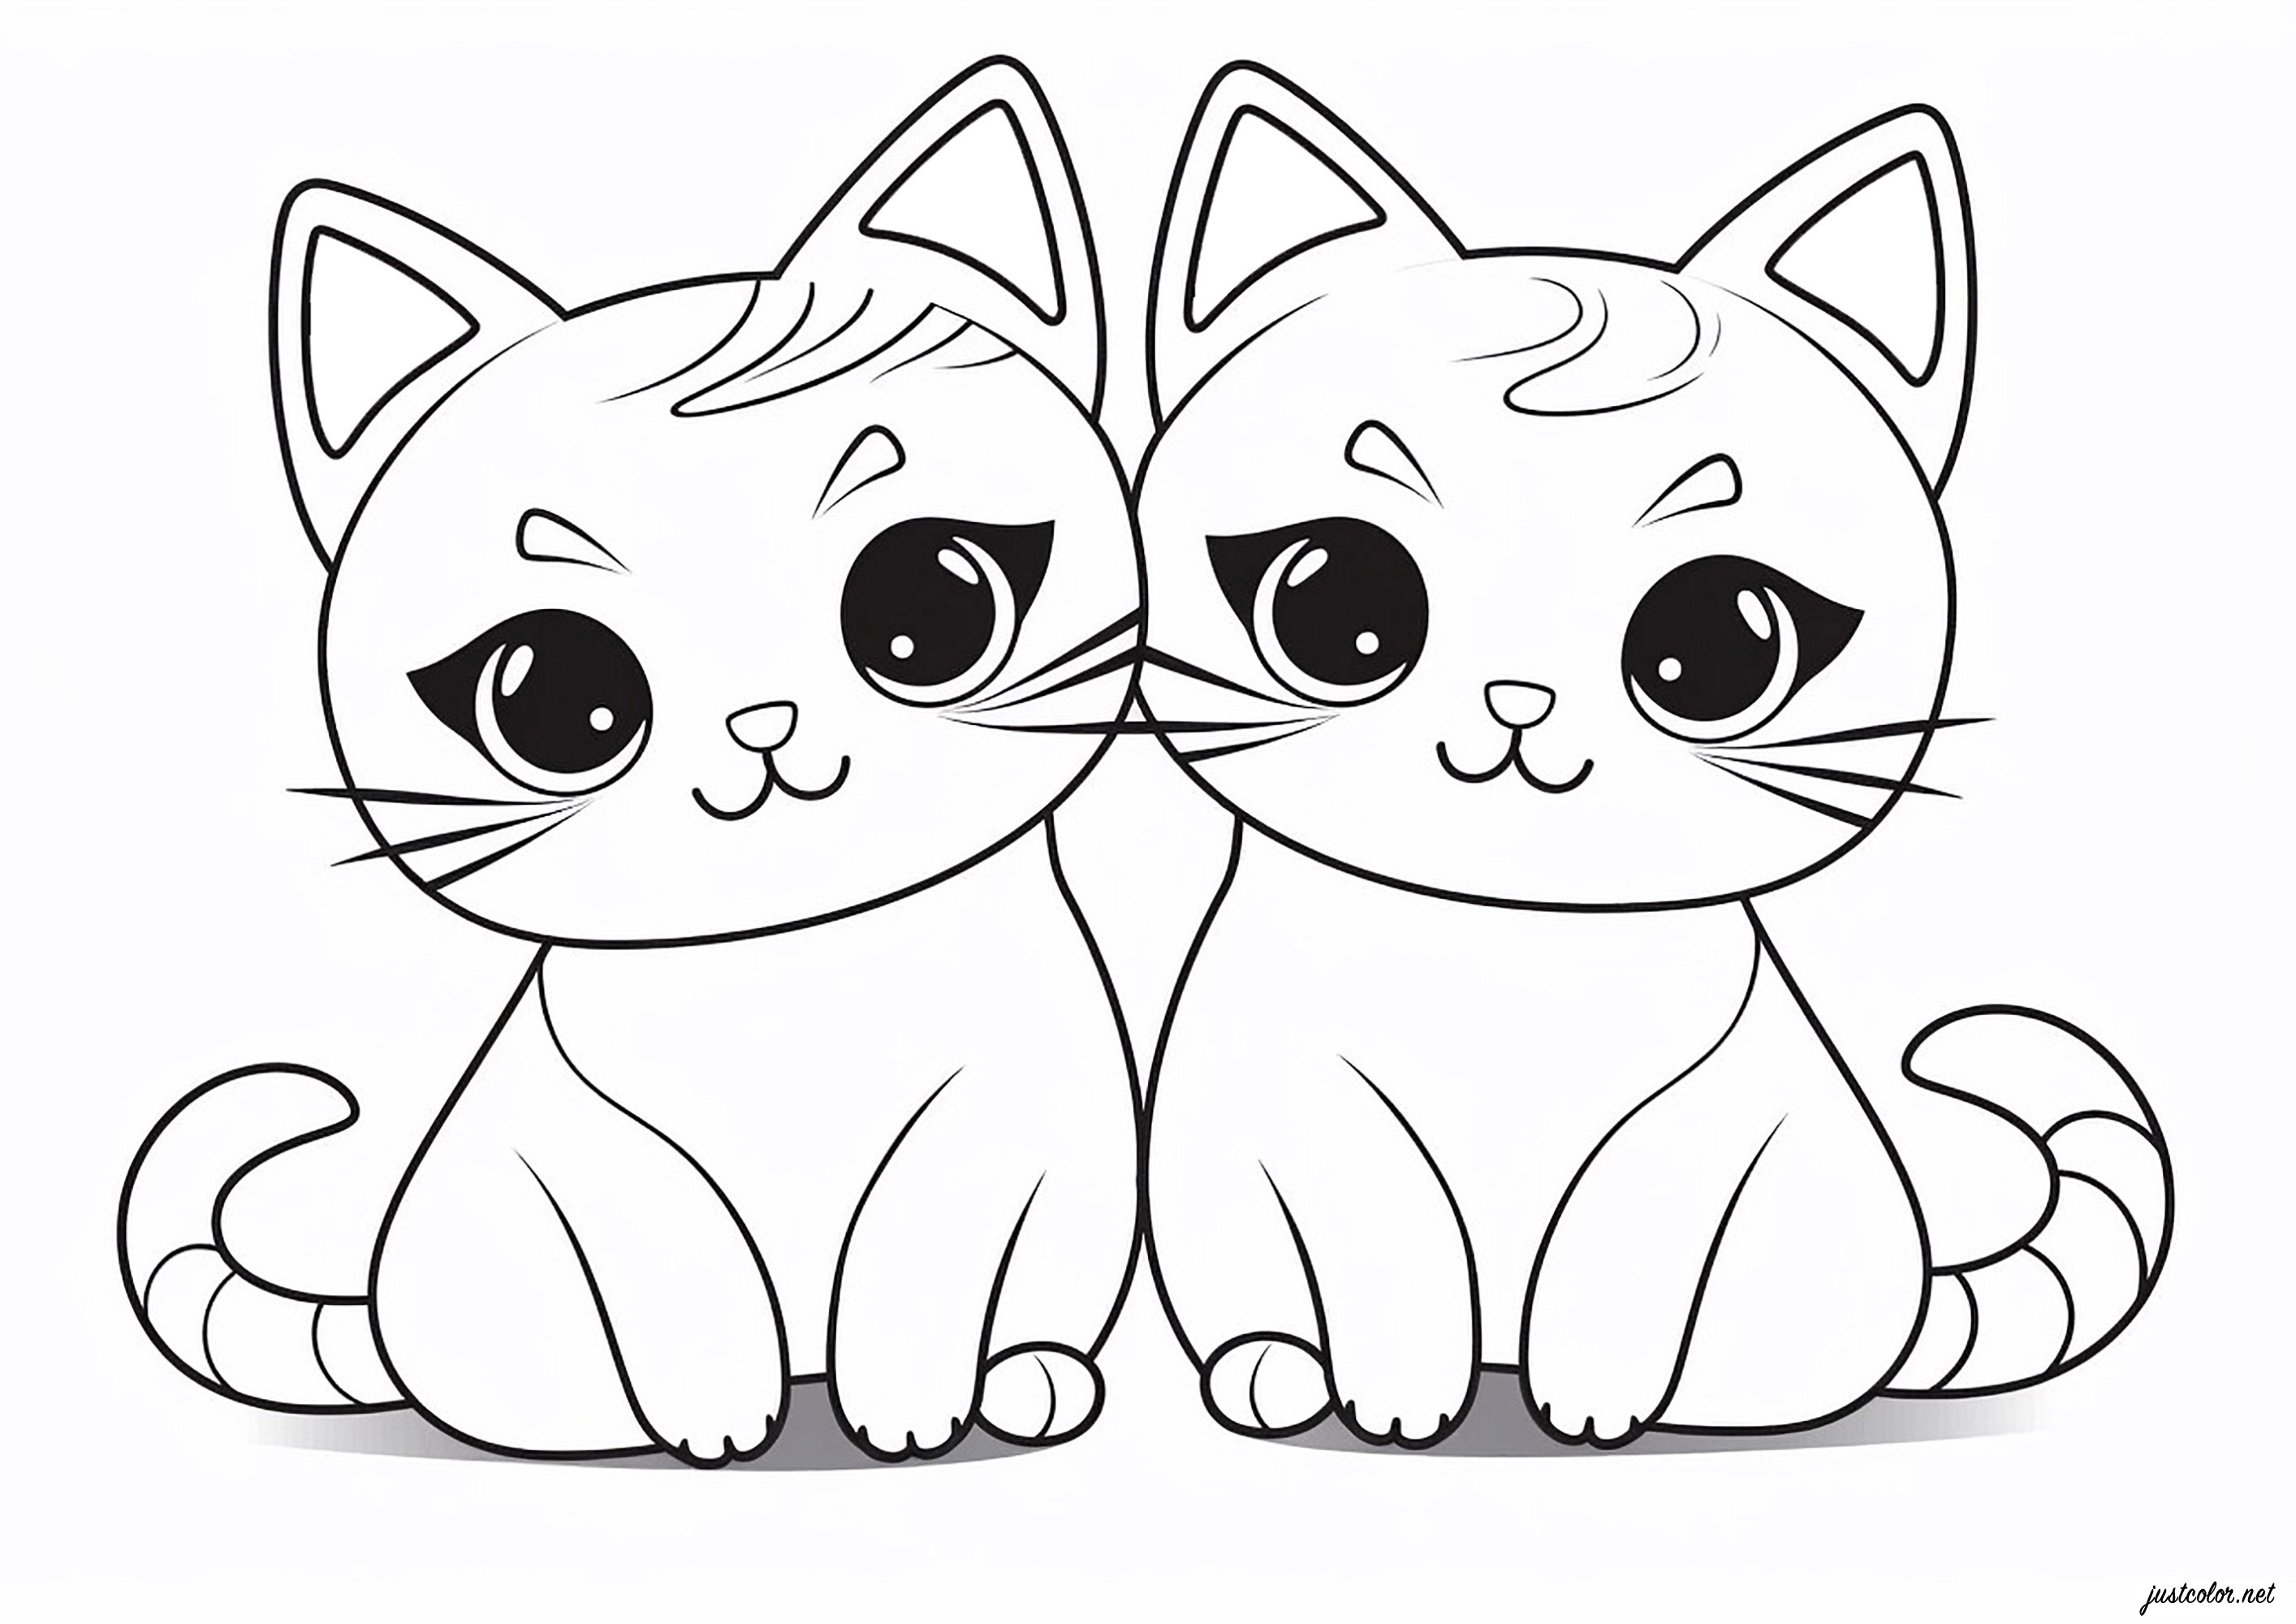 Dos Gatos diseñados en un sencillo estilo kawaii